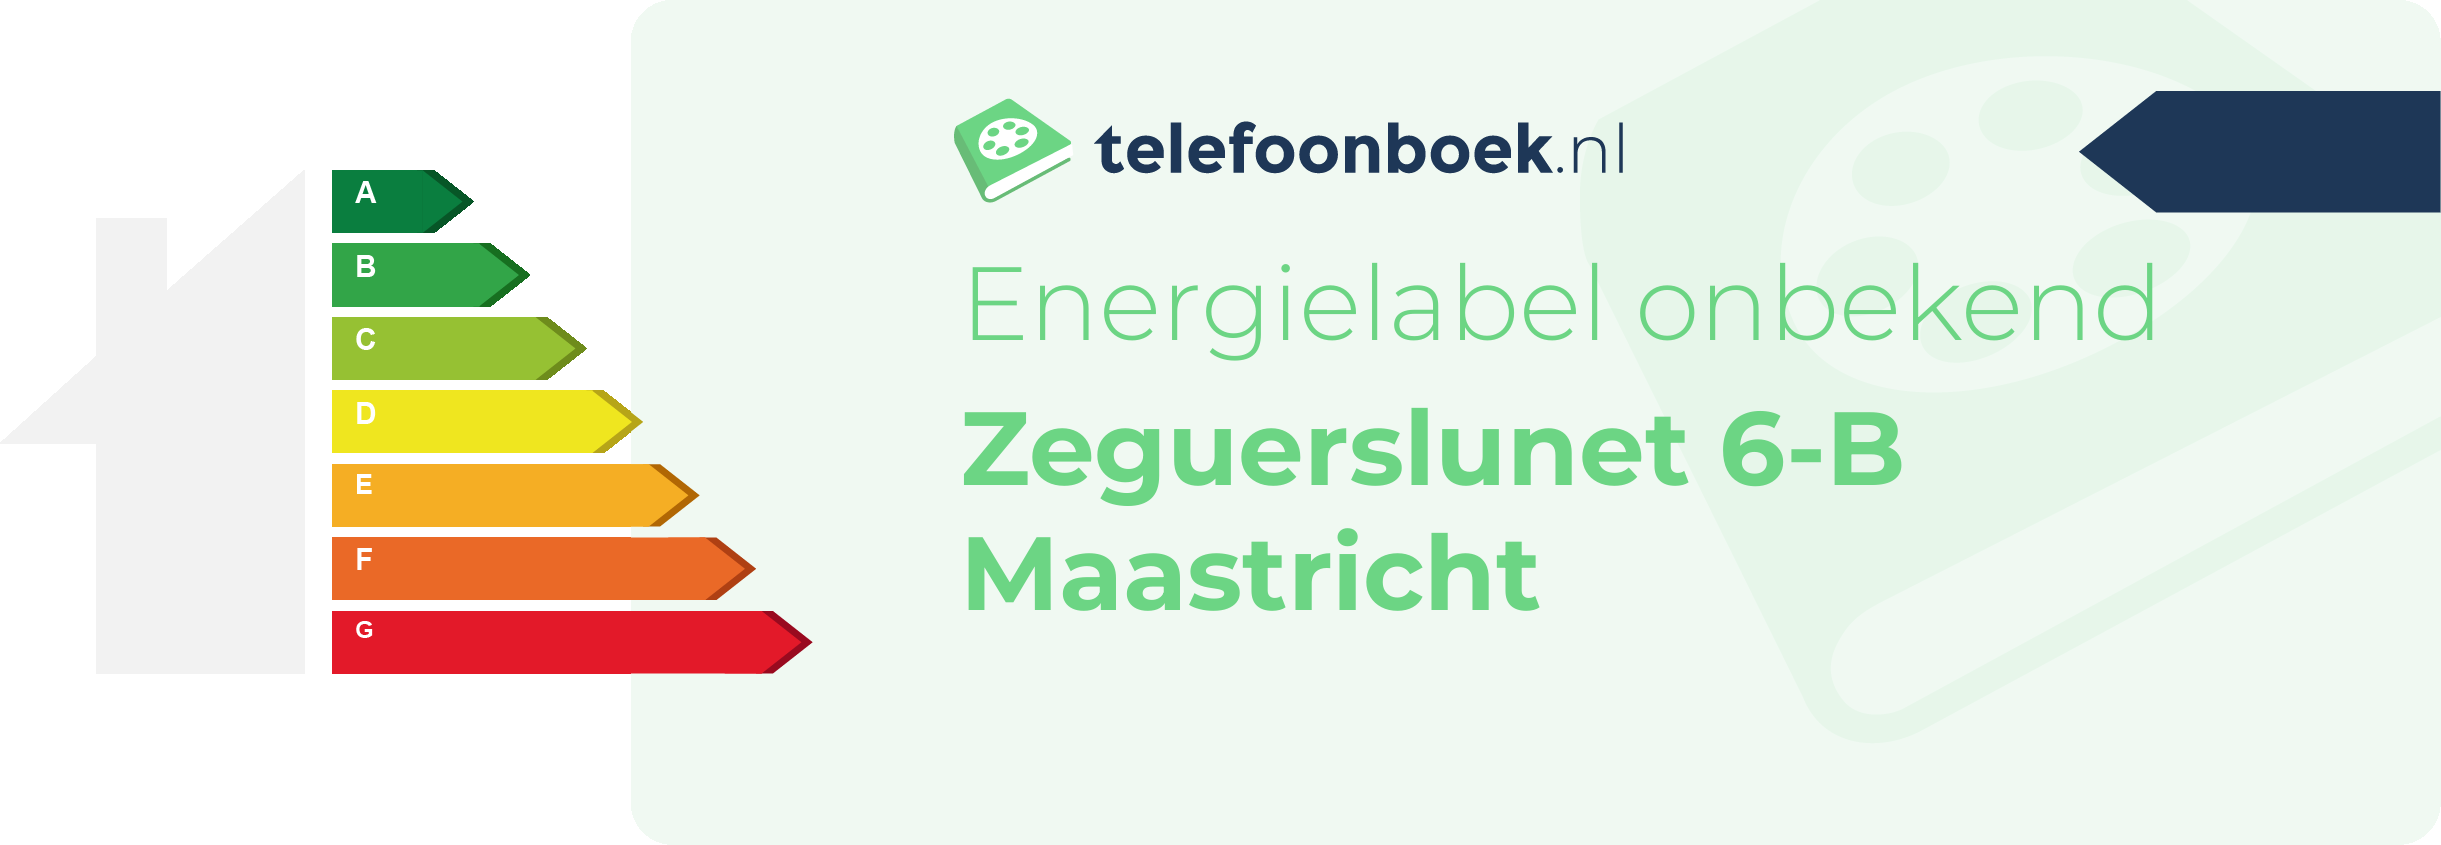 Energielabel Zeguerslunet 6-B Maastricht